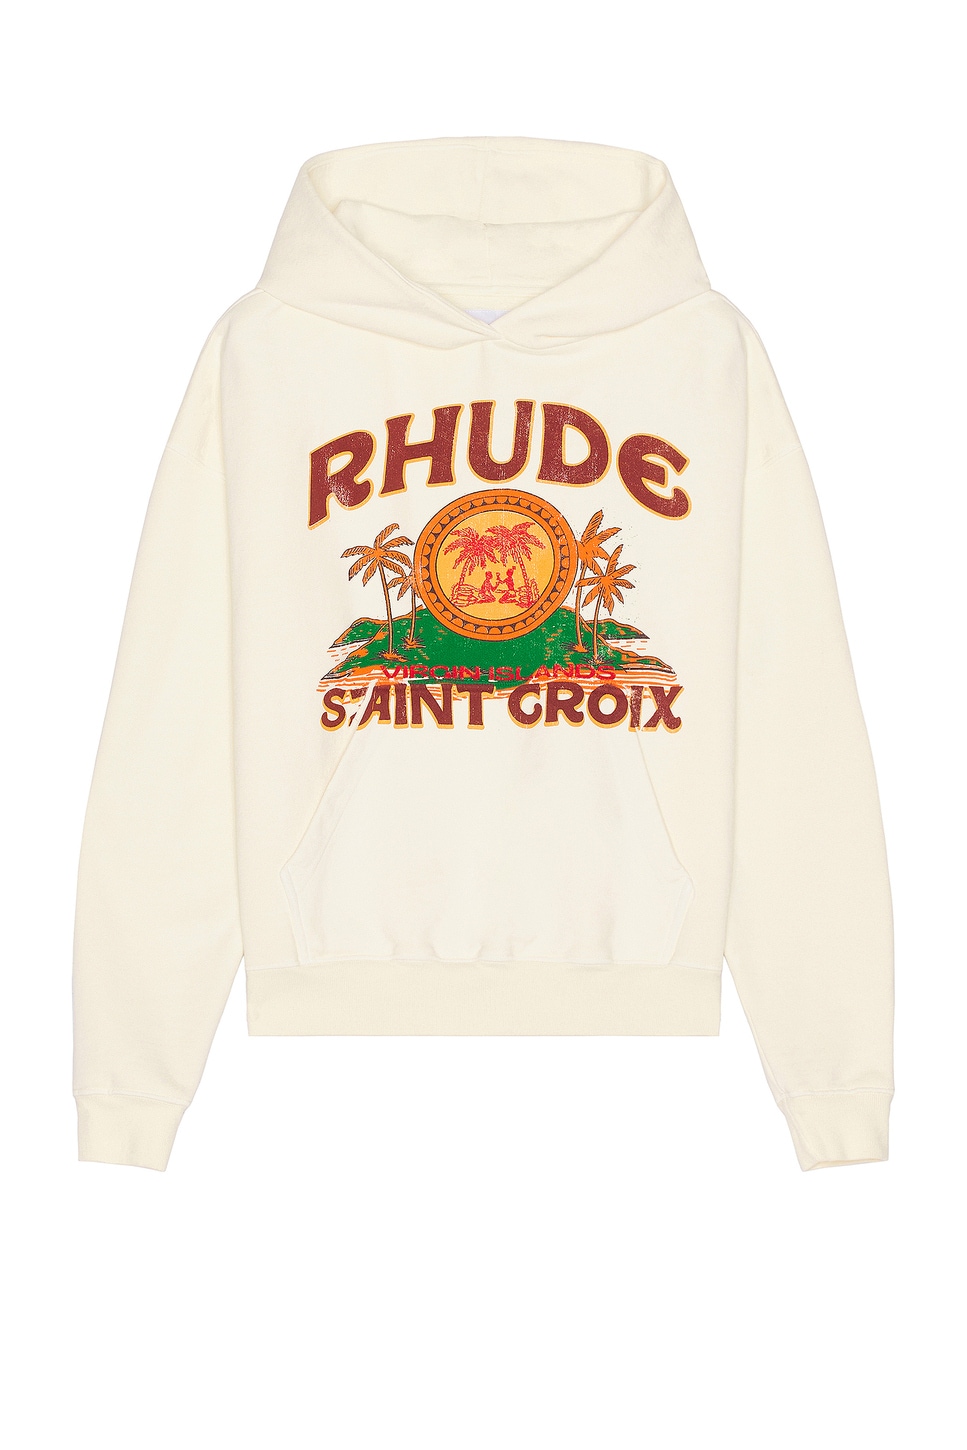 Image 1 of Rhude Rhude St. Croix Hoodie in Vintage White